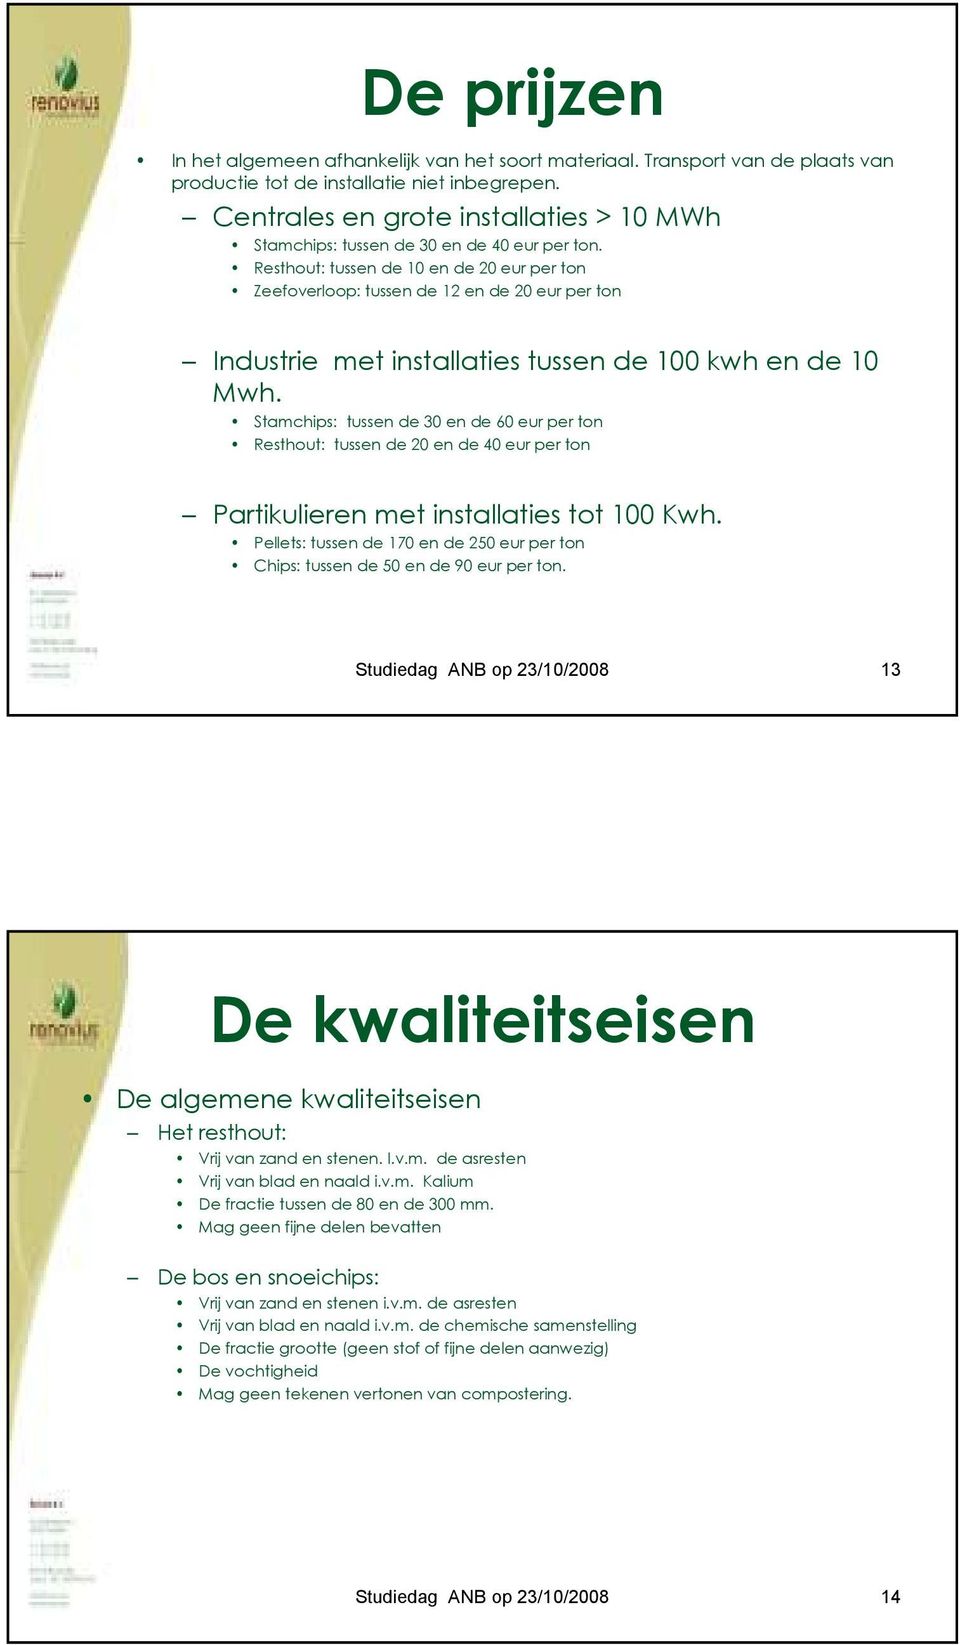 Resthout: tussen de 10 en de 20 eur per ton Zeefoverloop: tussen de 12 en de 20 eur per ton Industrie met installaties tussen de 100 kwh en de 10 Mwh.